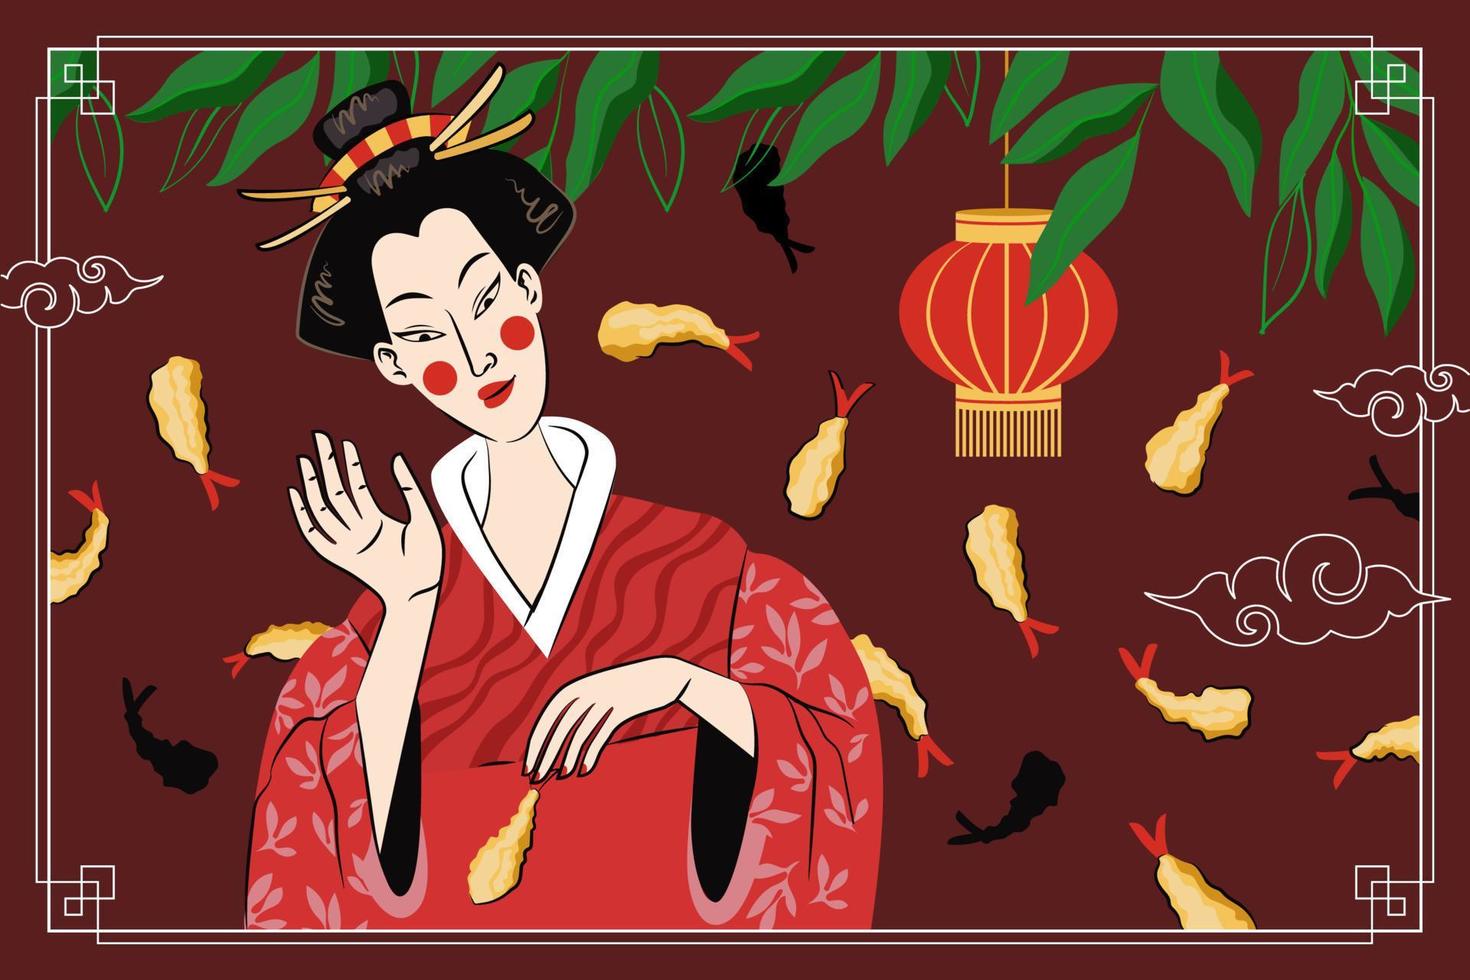 conception d'affiche de dessin de tempura de cuisine japonaise. plat national du japon crevettes frites dans la pâte. bannière publicitaire de sushi rolls bar. menu de restaurant de fruits de mer asiatique ou décoration de flyer avec femme geisha. vecteur